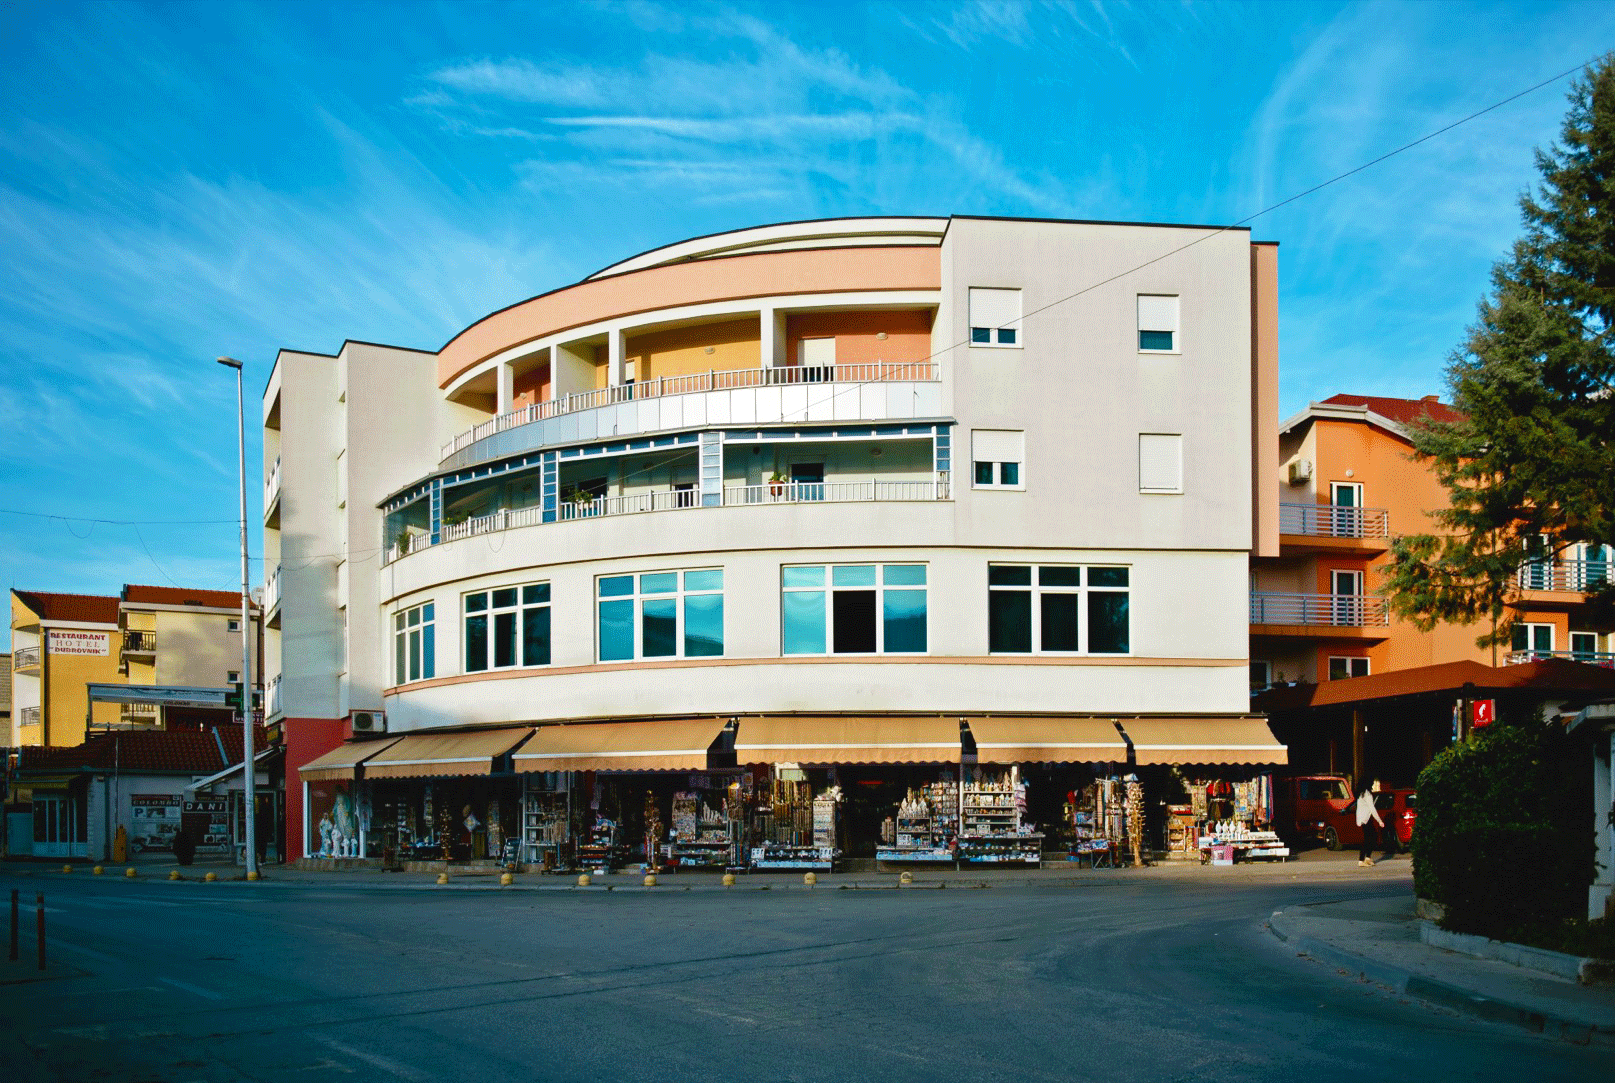 Hotel Orbis i Skarby Bośni - Bośnia i Hercegowina